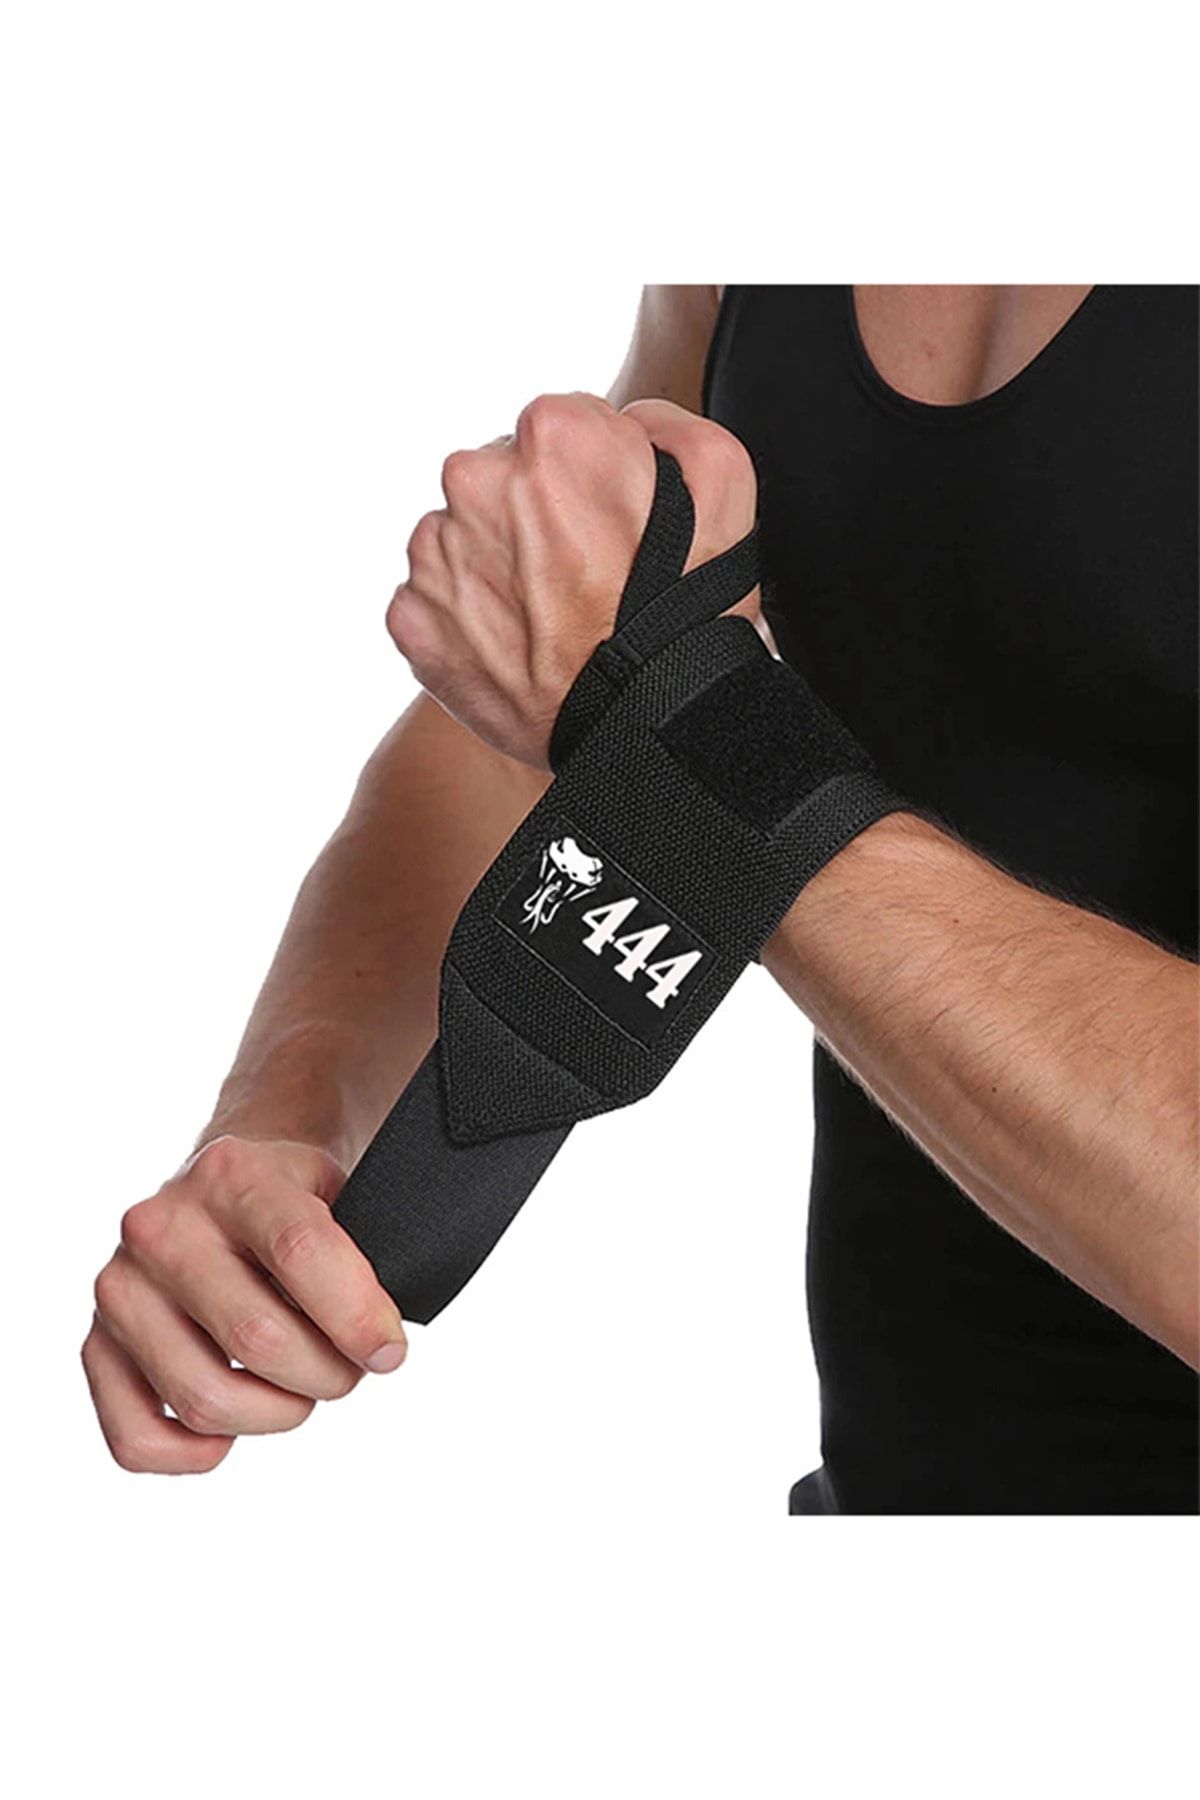 GAZELMANYA 2'li Fitness Ağırlık Bilekliği Bilek Koruyucu Wrist Wraps Bilek Sargısı Halter & Fitness & Crossfit